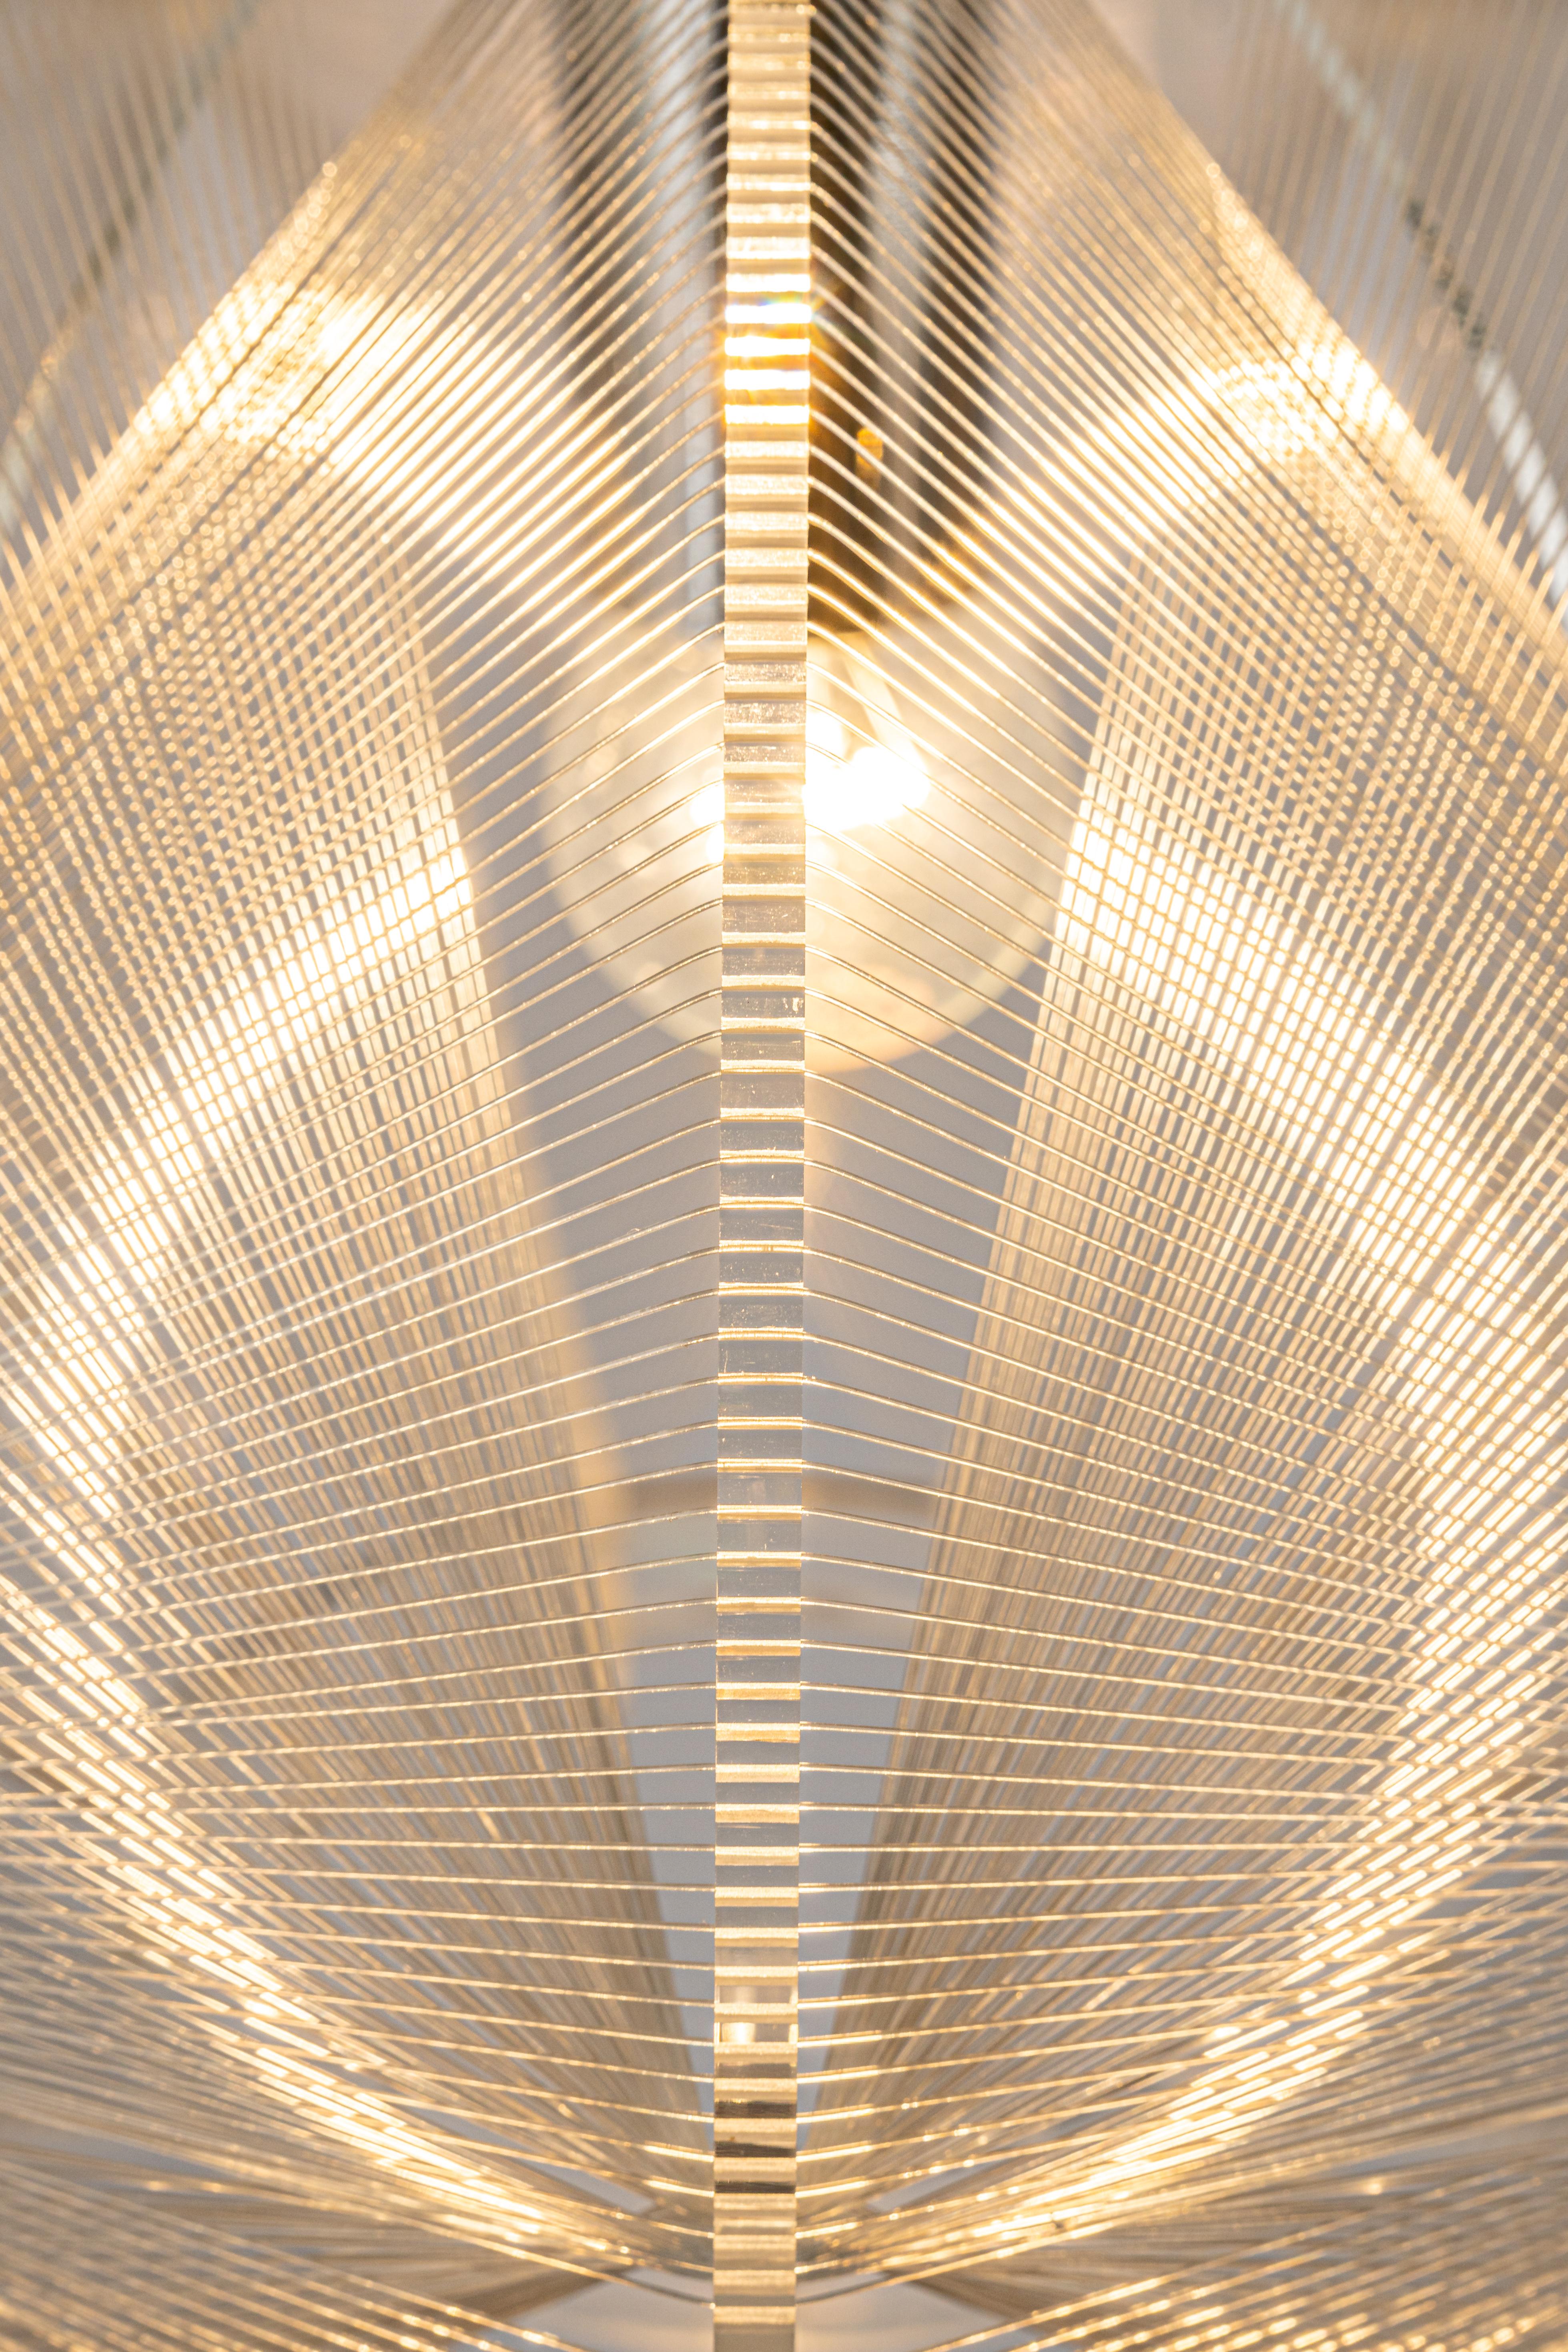 Lampe suspendue en fil métallique transparent par Paul Secon pour Sompex, années 1970. La lampe suspendue est fabriquée en Lucite clair avec des fils de nylon tissés entourant l'ampoule, ce qui donne une lumière chaude lorsqu'elle est